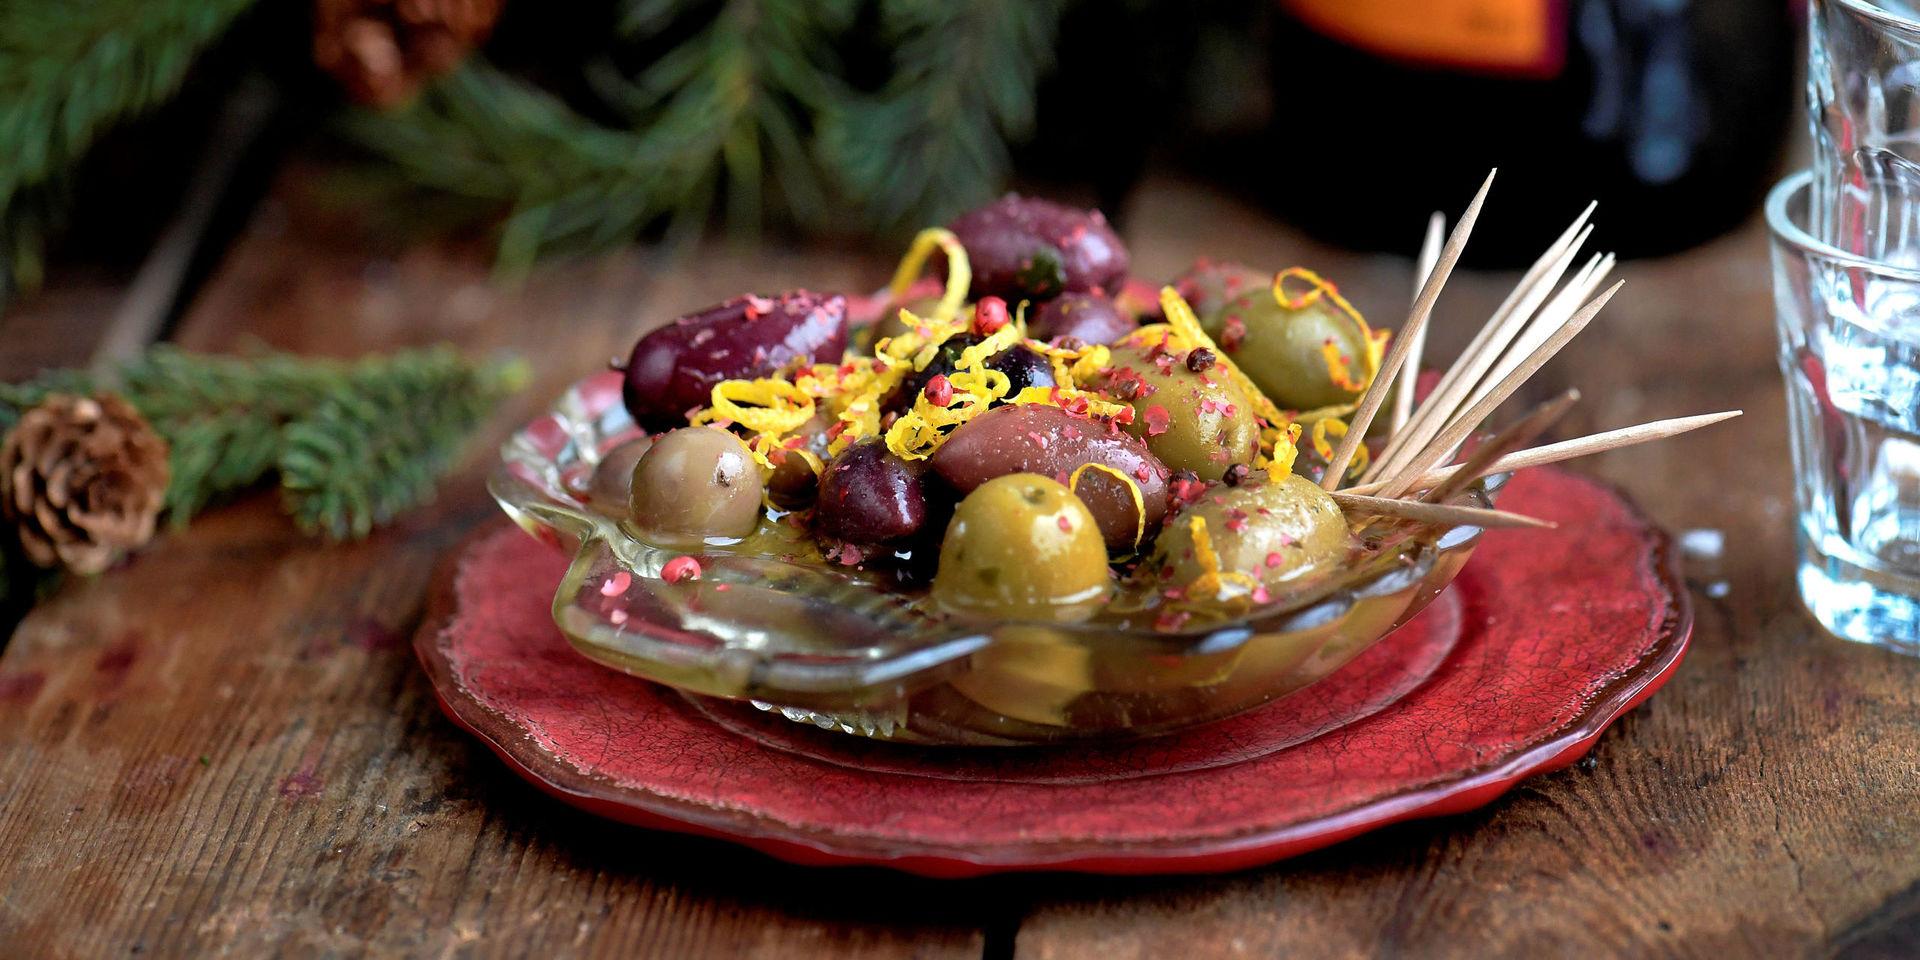 Kryddmarinerade oliver passar väldigt bra till söt glögg.